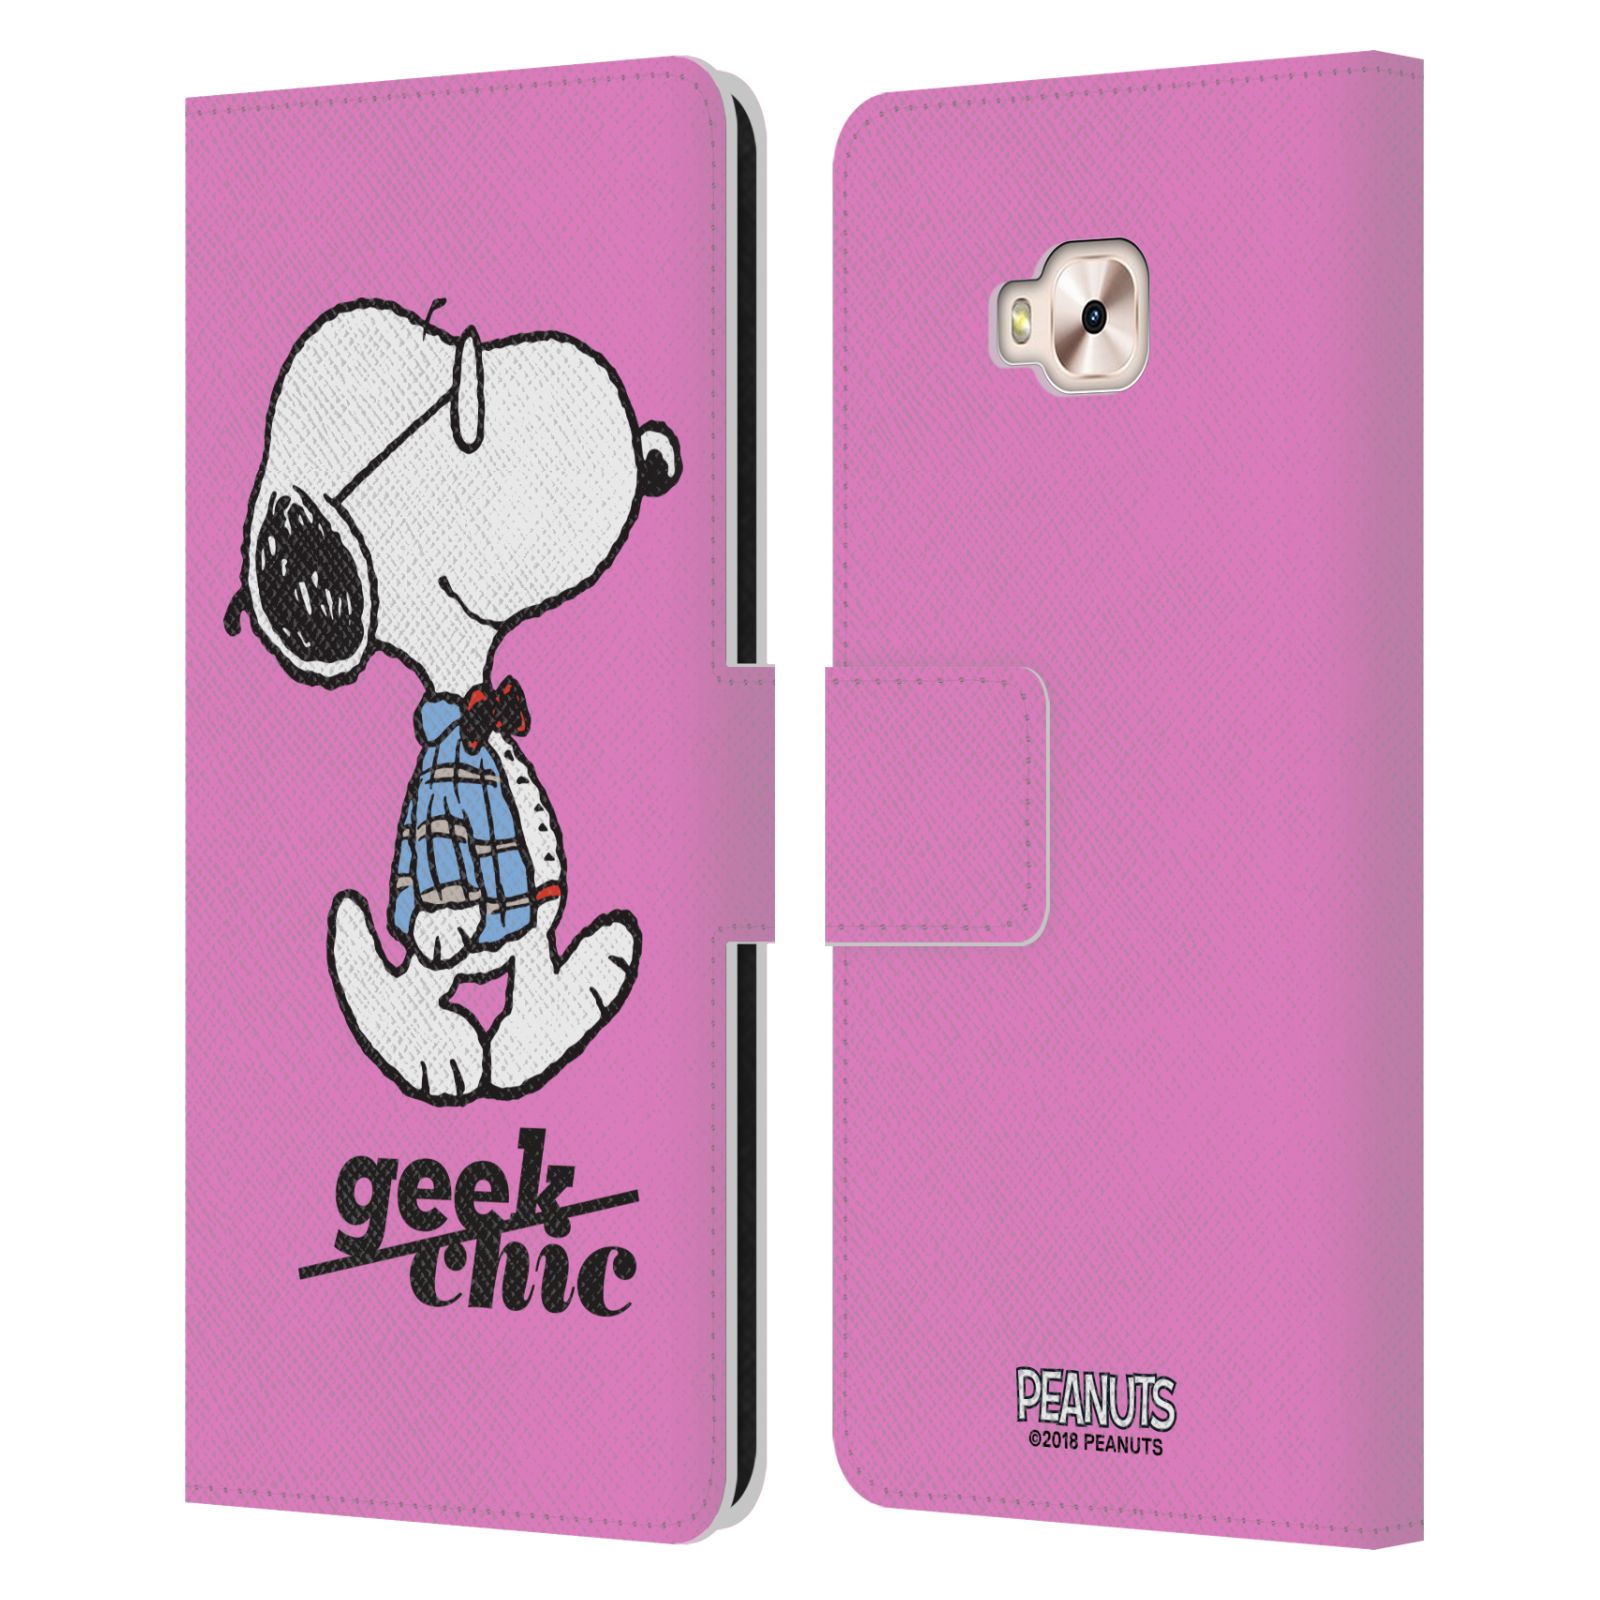 Pouzdro na mobil Asus Zenfone 4 Selfie Pro ZD552KL - Head Case - Peanuts - růžový pejsek snoopy nerd